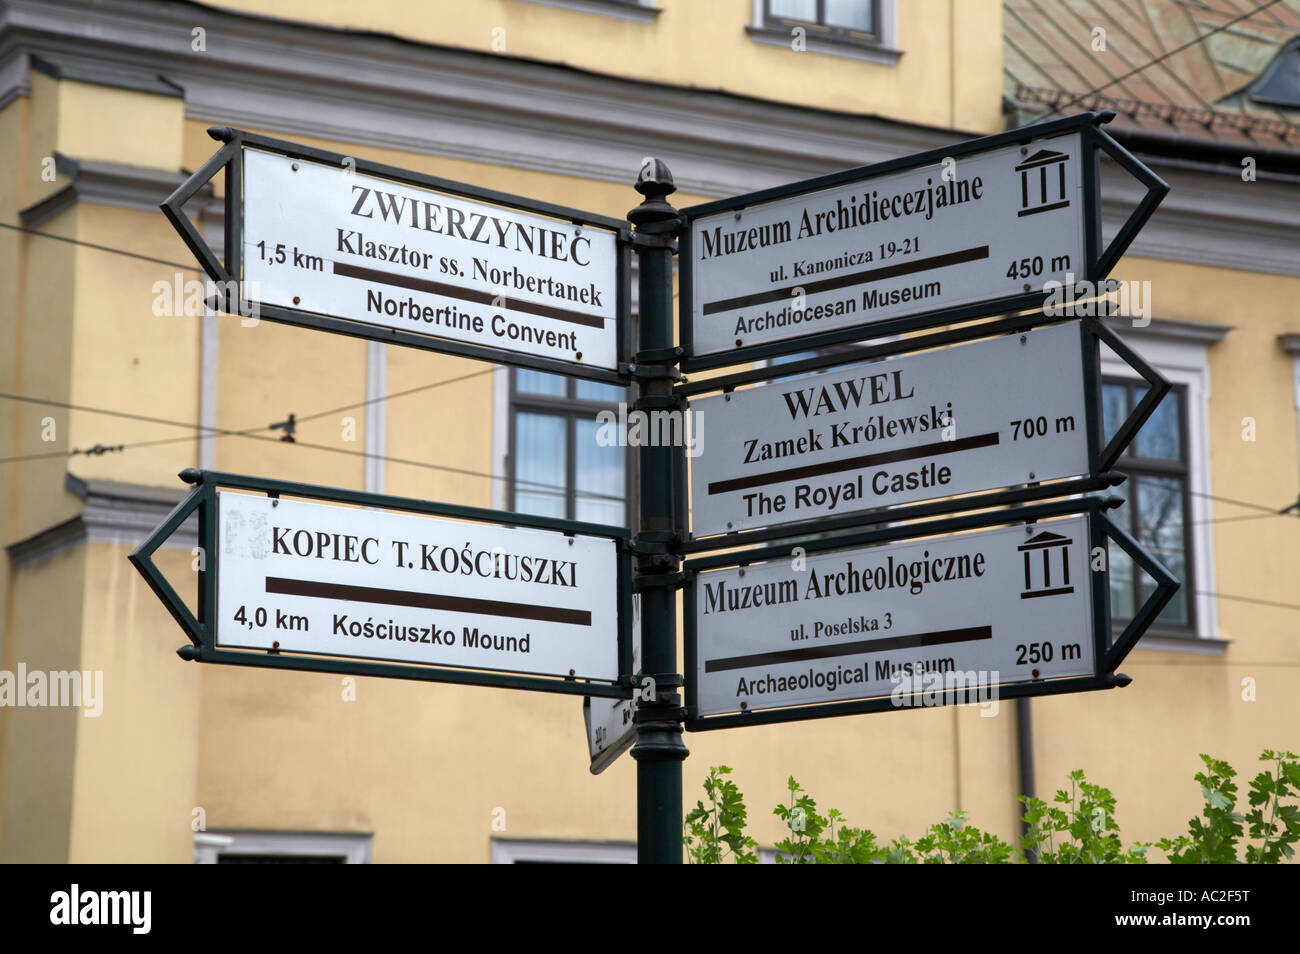 Pedonale turistica indicazioni per le attrazioni turistiche di Cracovia la piazza della città vecchia Foto Stock